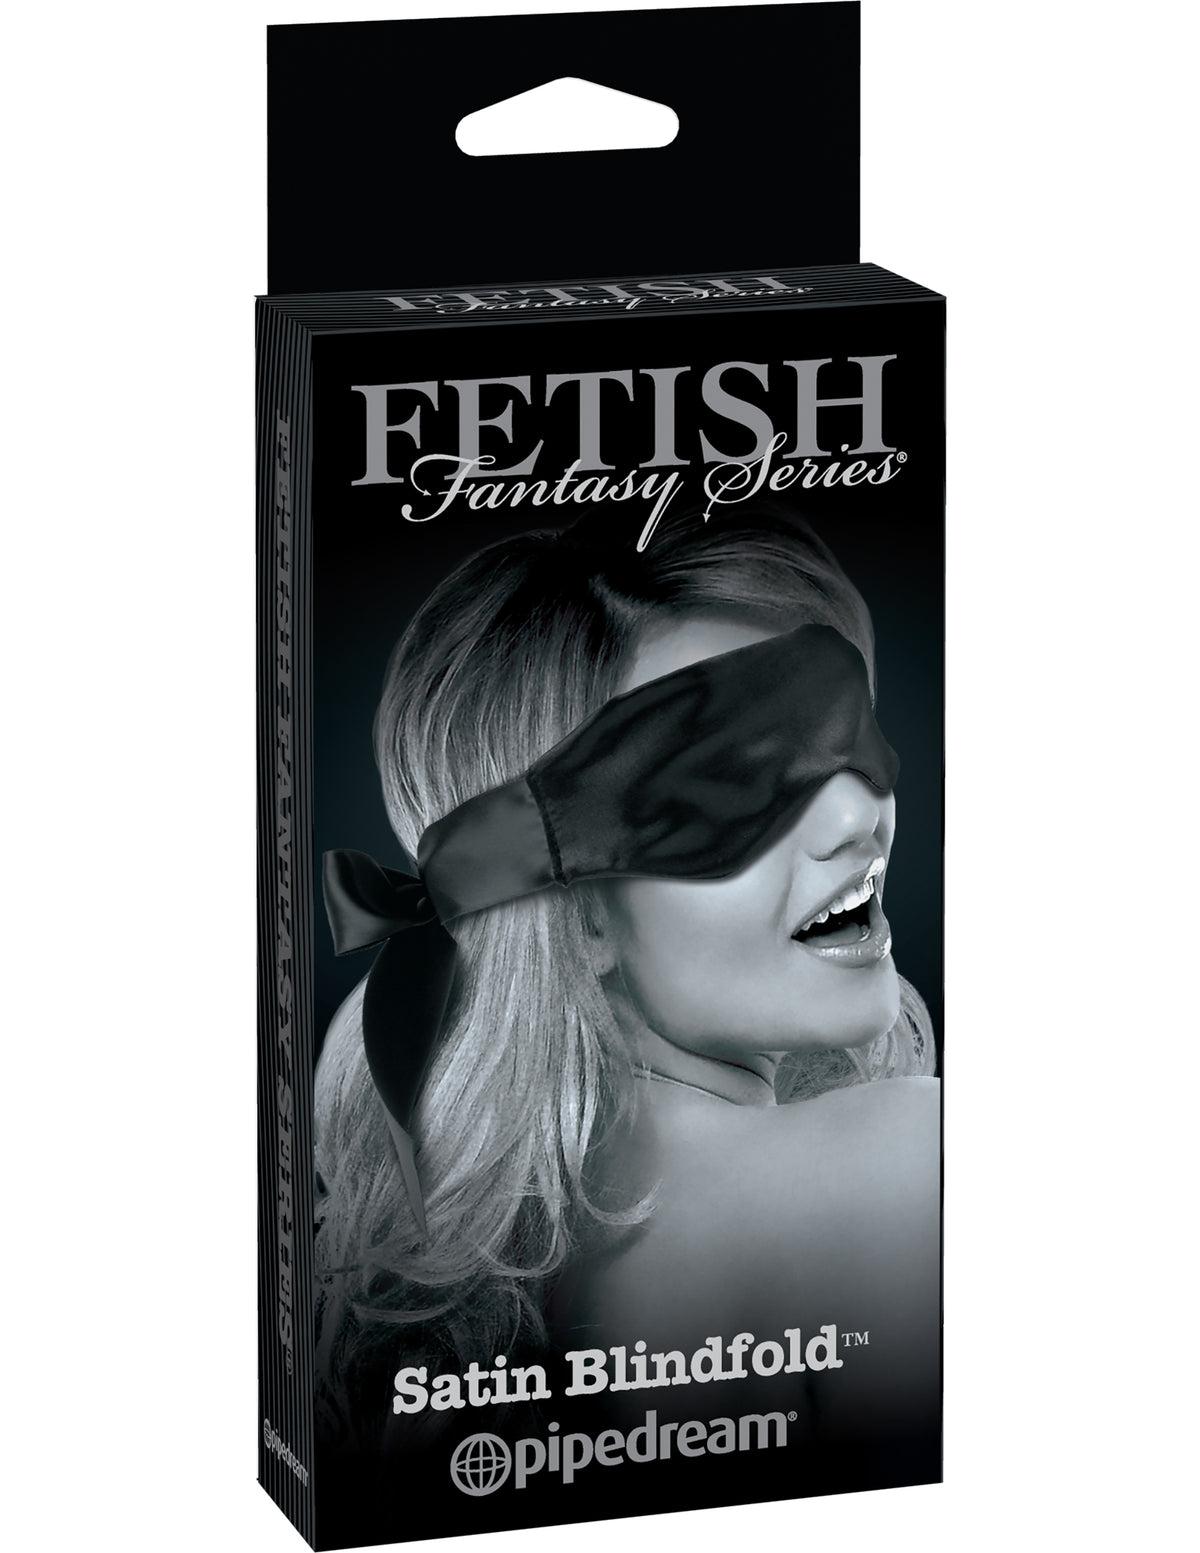 Fetish Fantasy Limited Edition Satin Blindfold Black